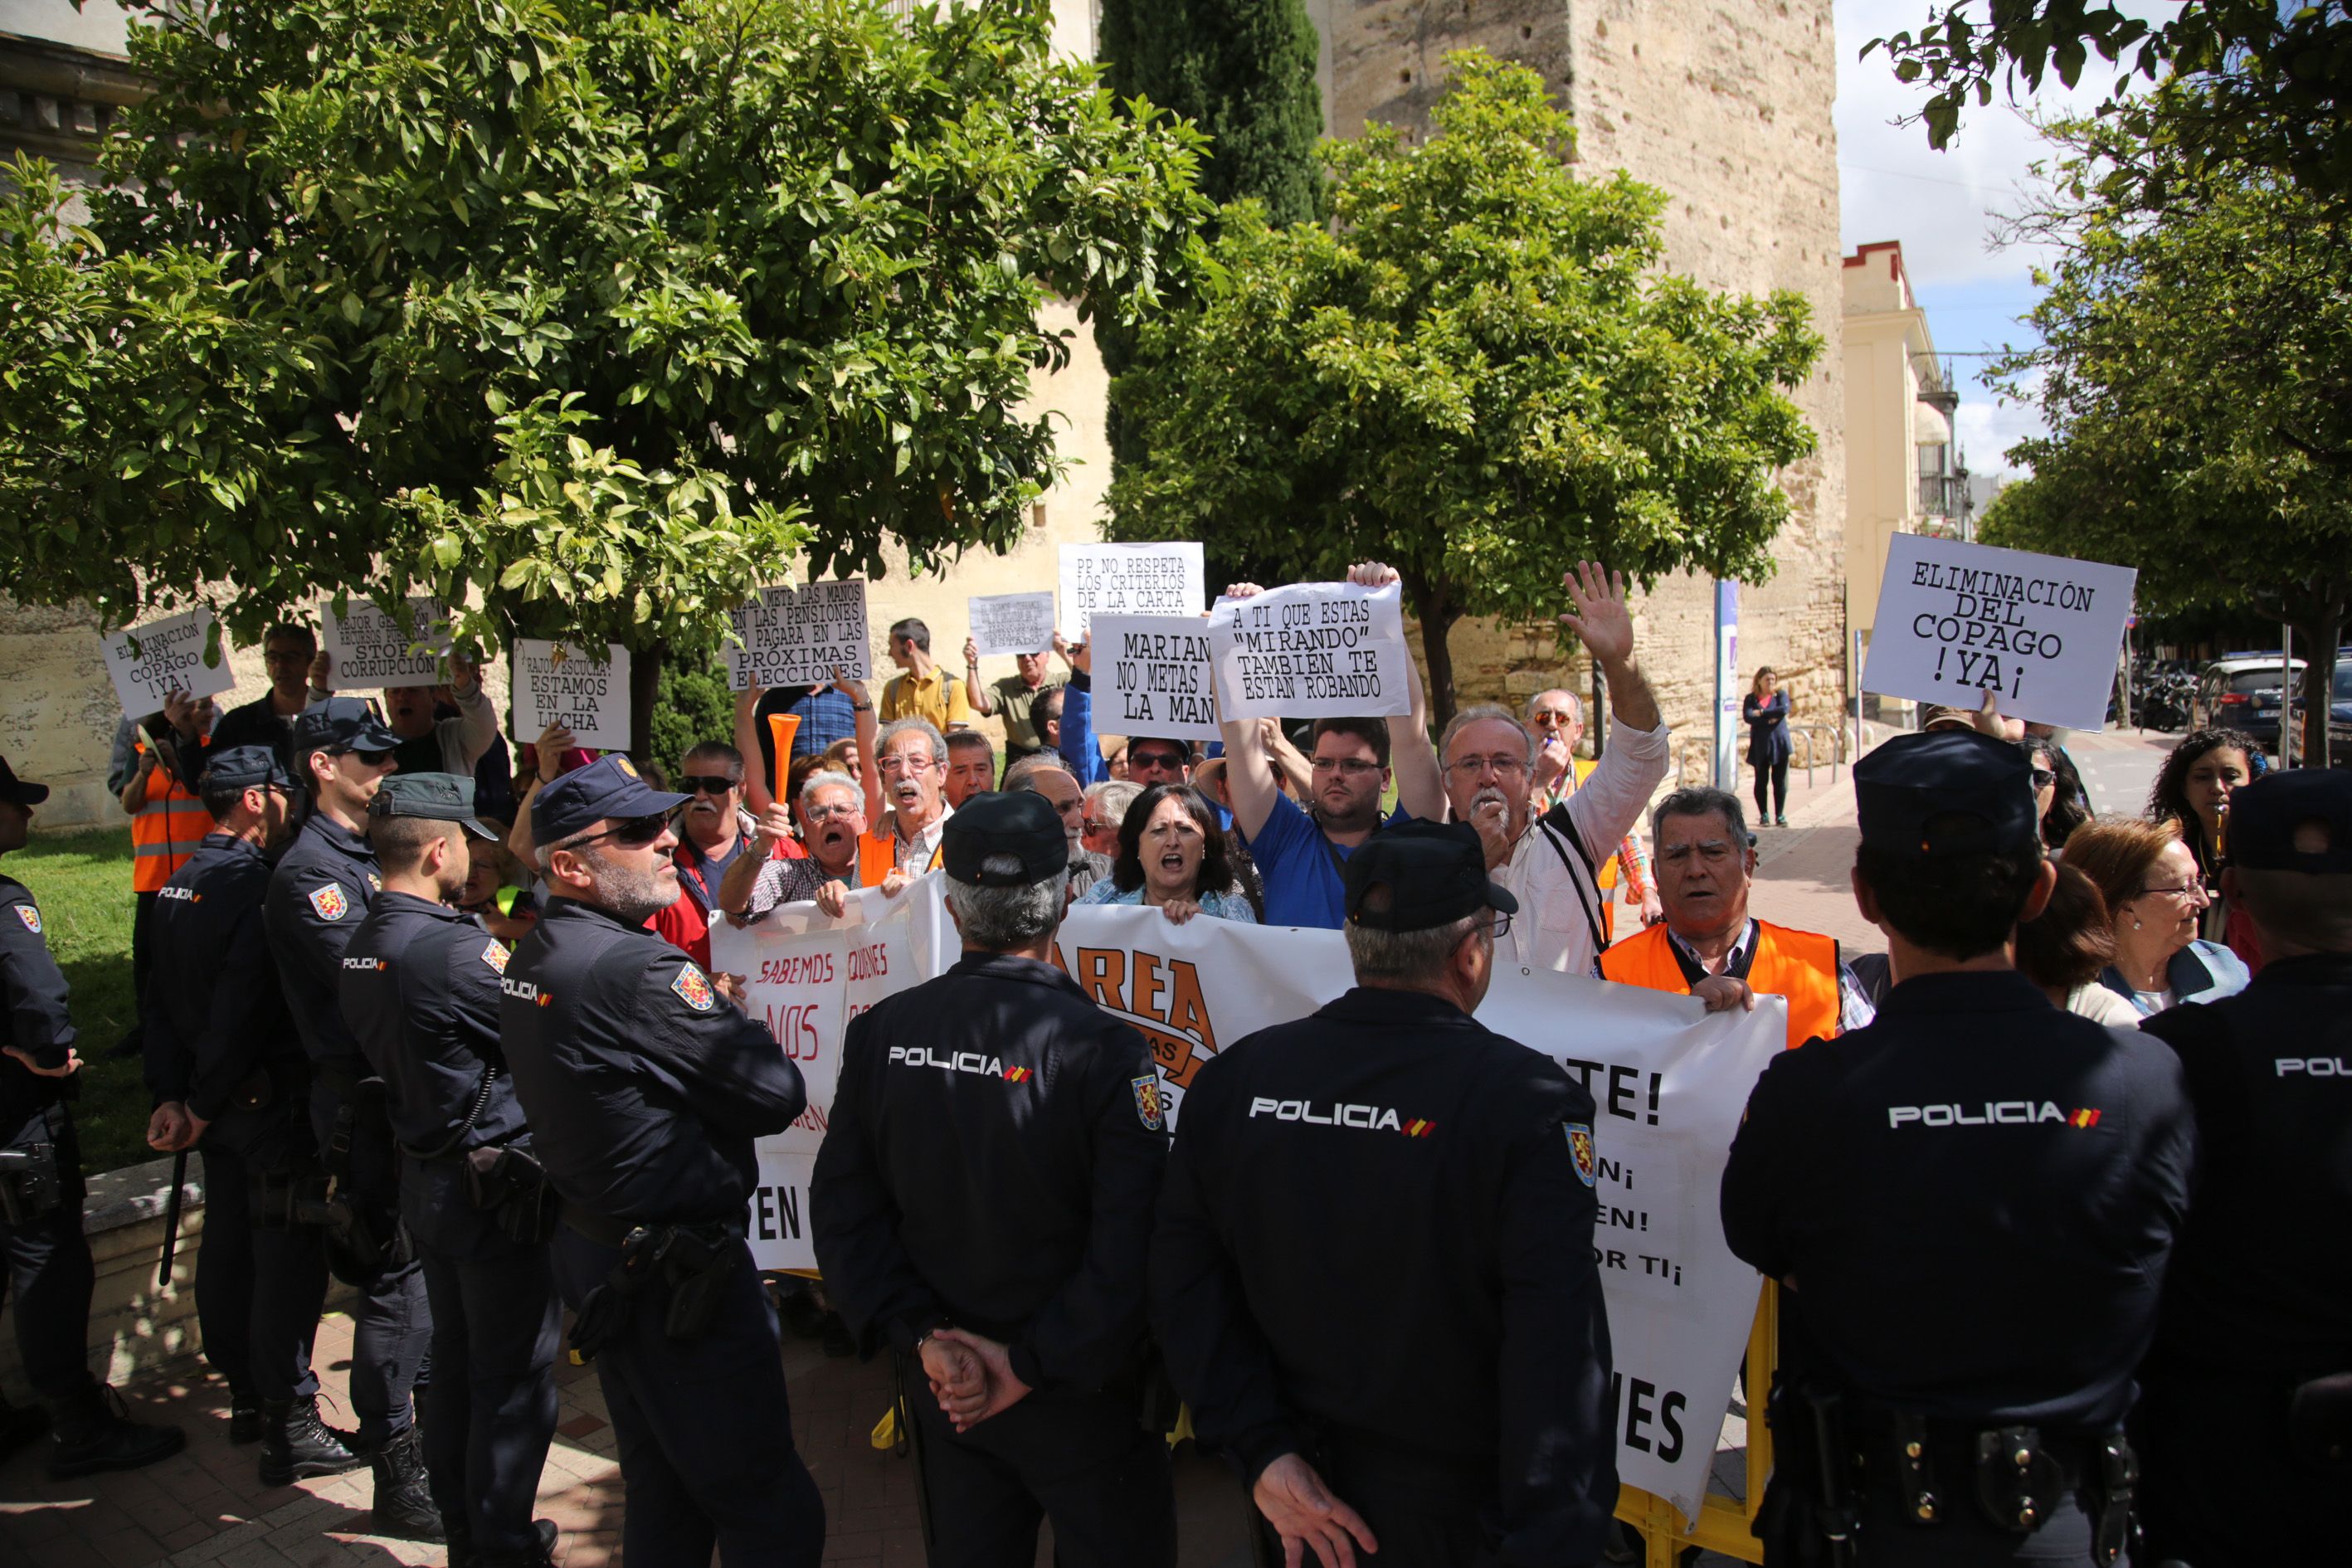 Los pensionistas protestan en la puerta del convento de San Agustín. FOTO: JUAN CARLOS TORO.